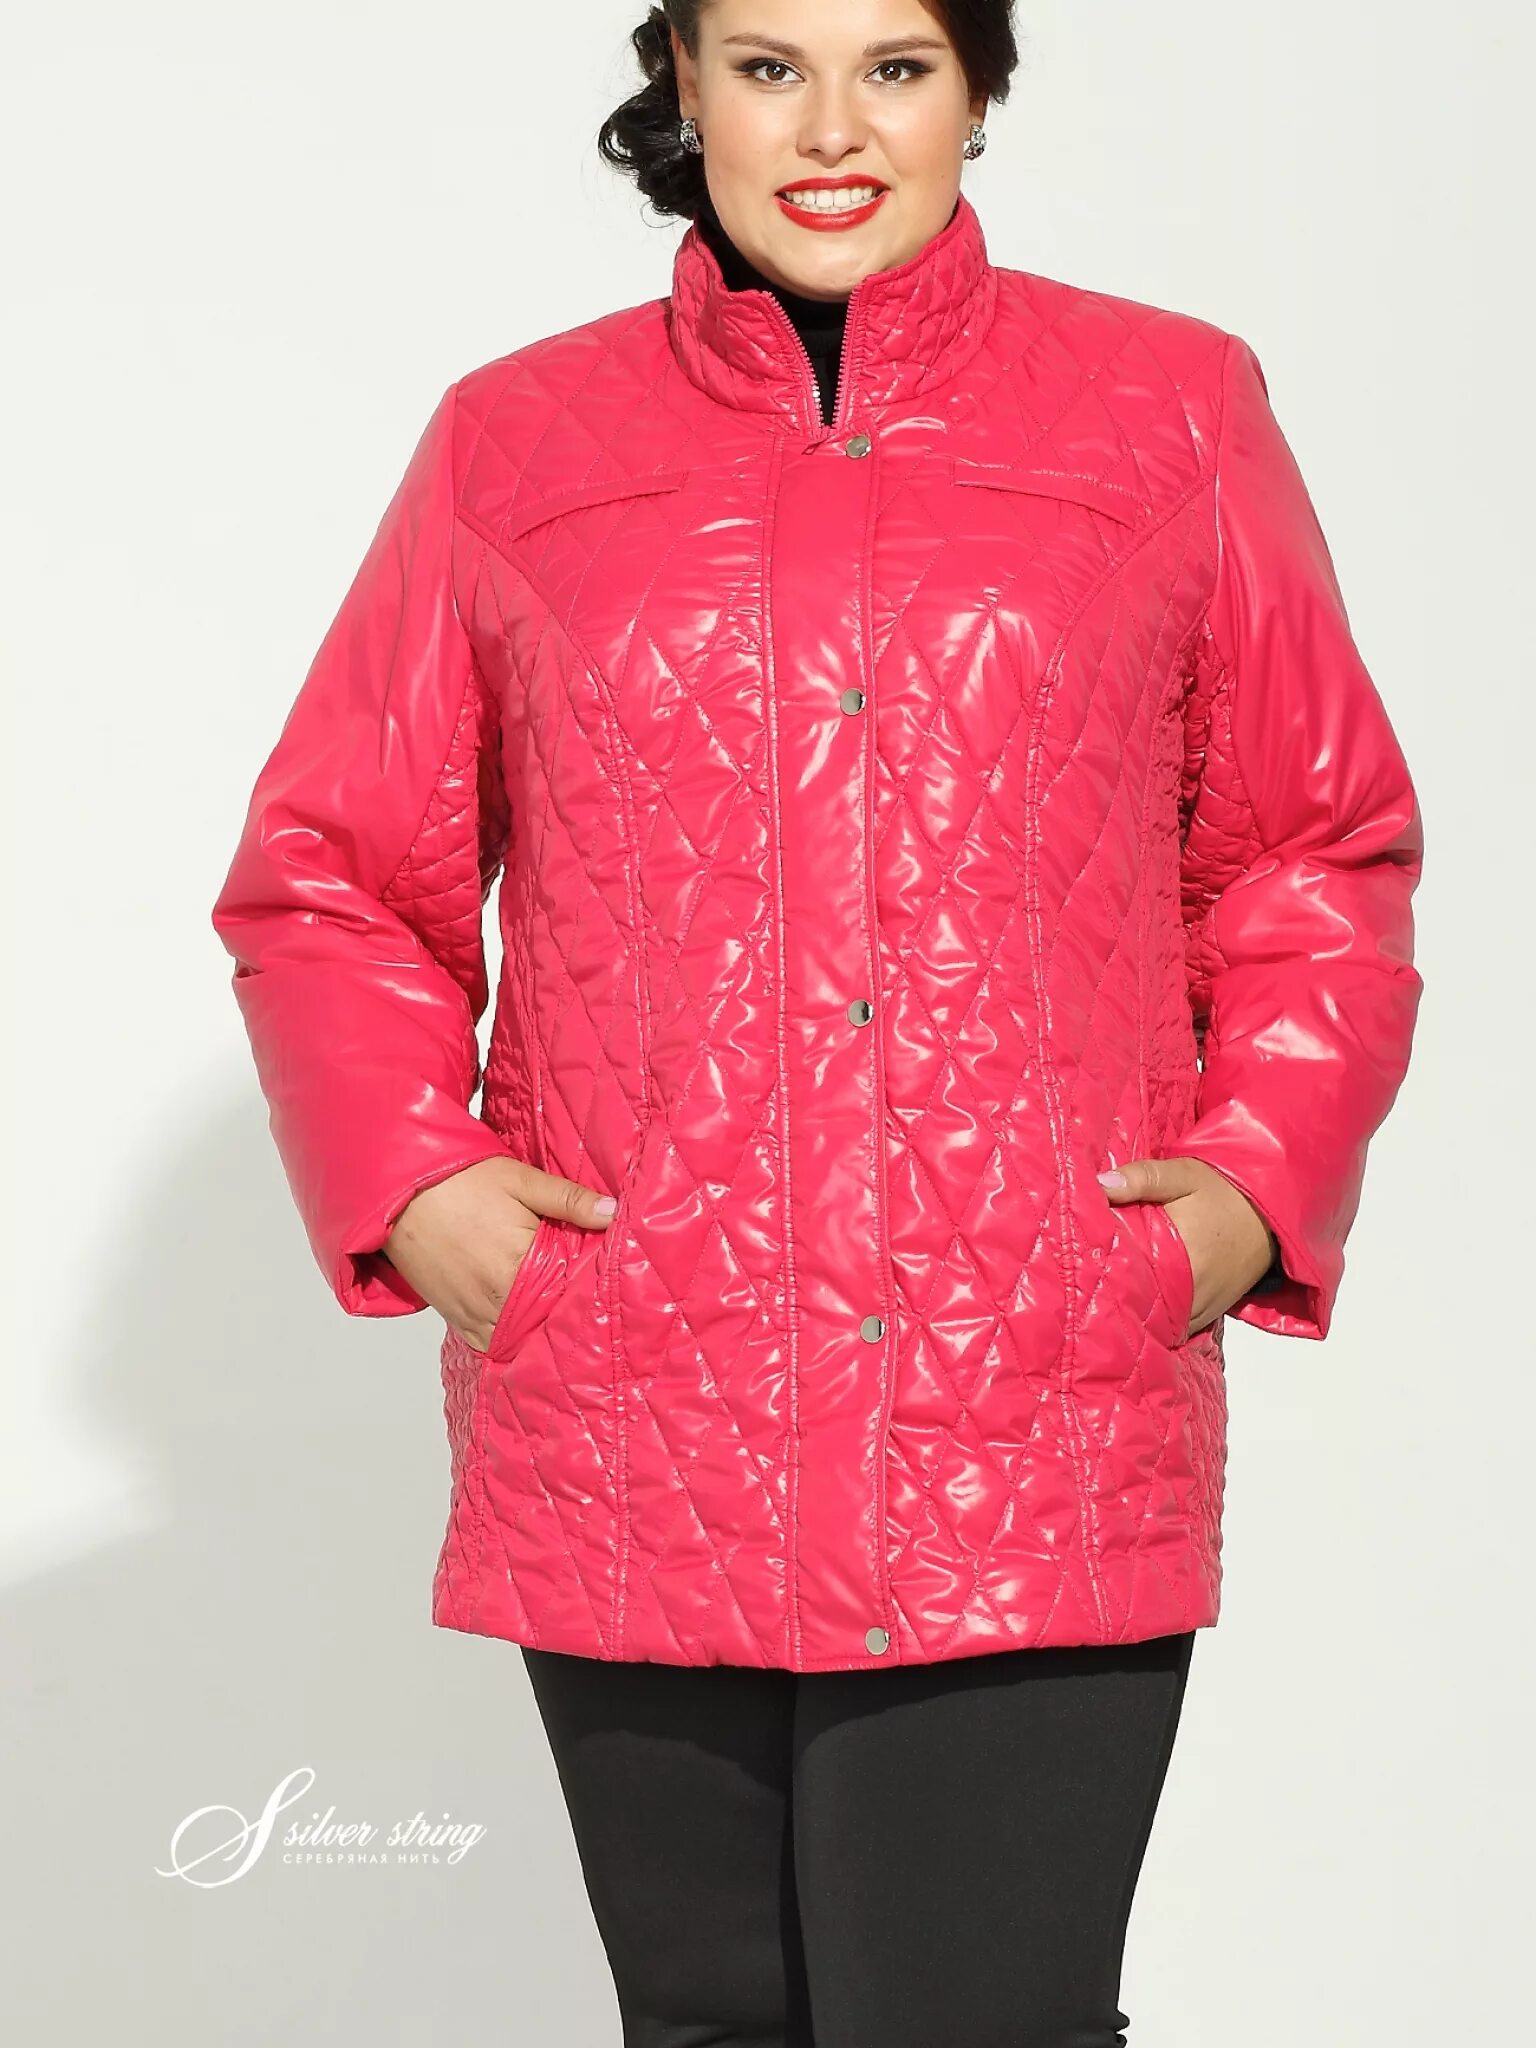 Куртка демисезонная женская 54 размер Баттерфляй. Mishel утепленная куртка 60 размер. Куртки женские для полных. Стильные куртки для полных женщин.